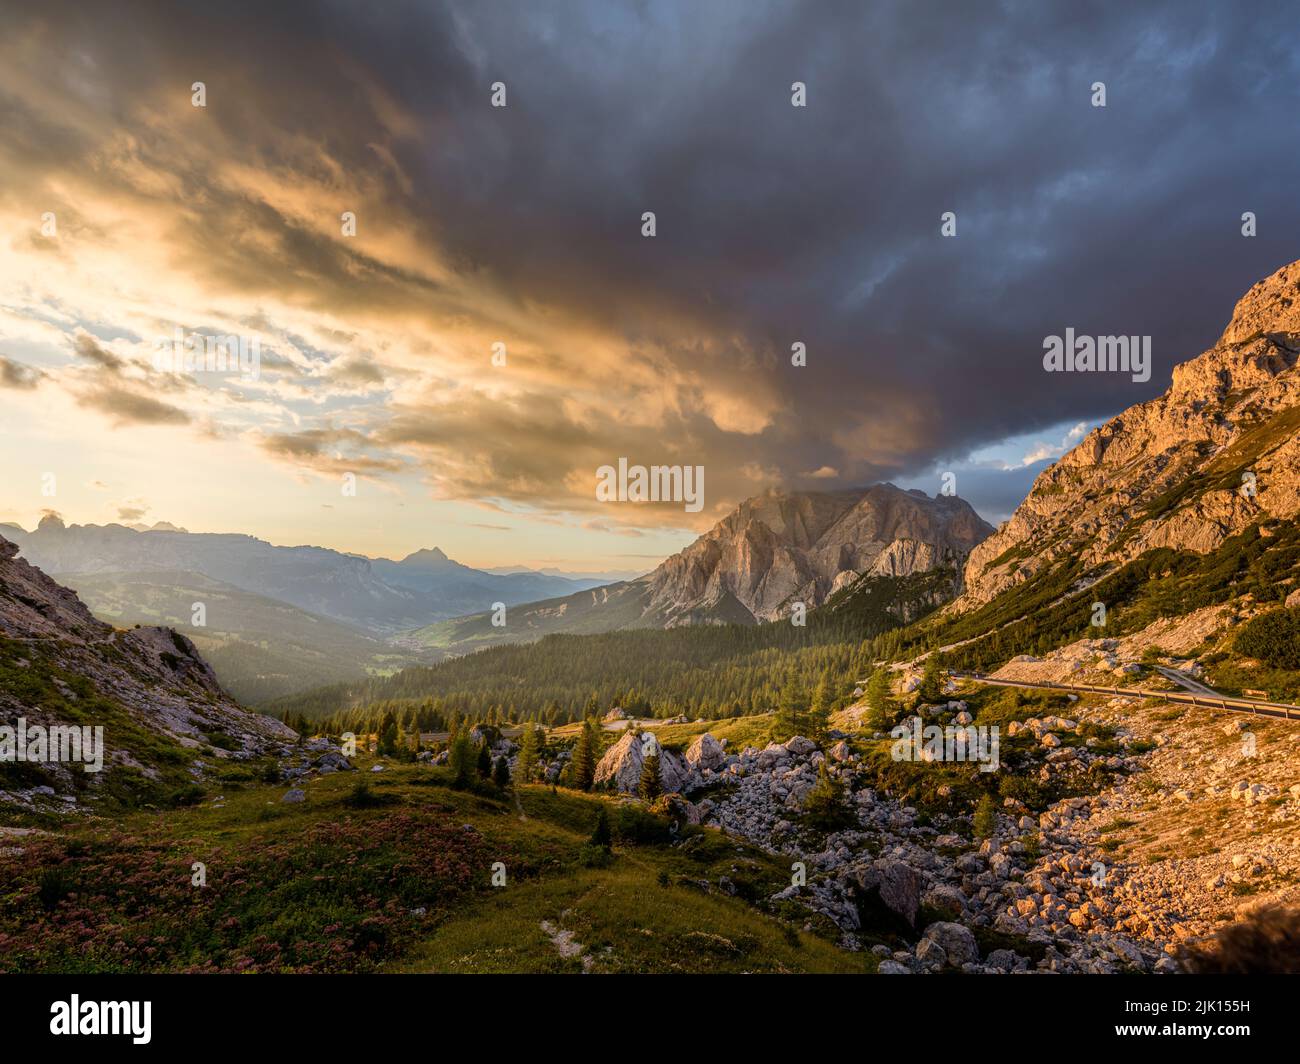 Puesta de sol sobre la montaña de Conturines con nubes de colores en el cielo y la luz dorada sobre los pinos y en el valle, Dolomitas, Italia, Europa Foto de stock